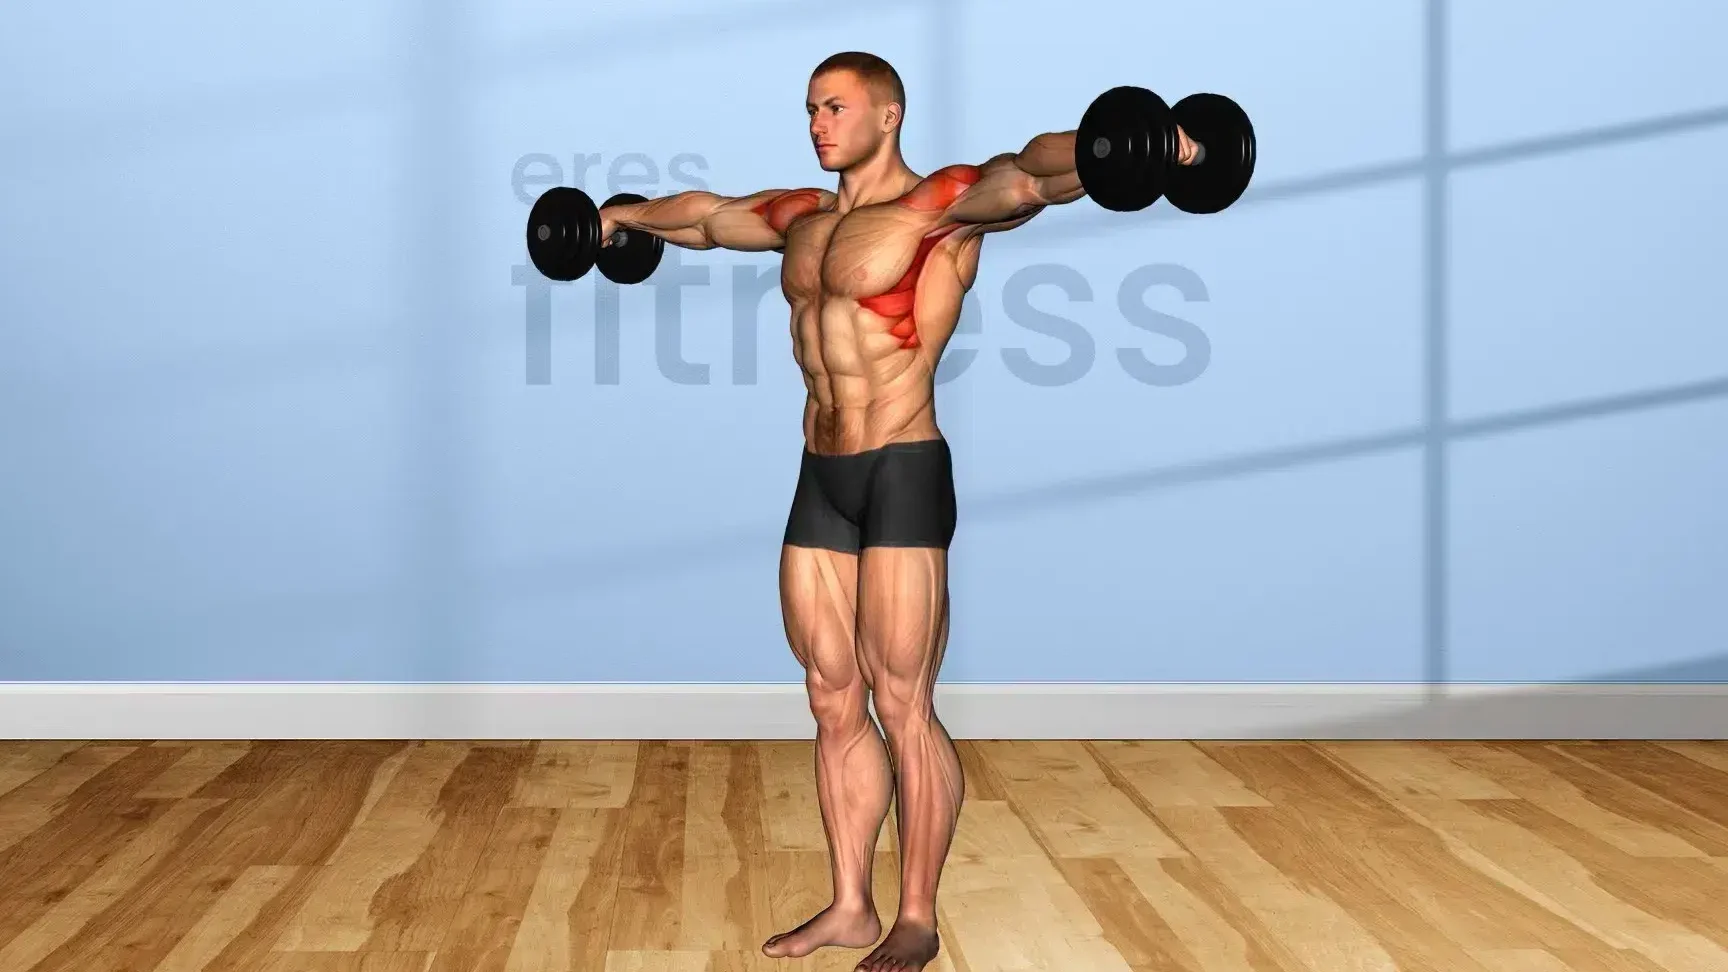 Músculos trabajados en el ejercicio de encogimiento de hombros con mancuernas